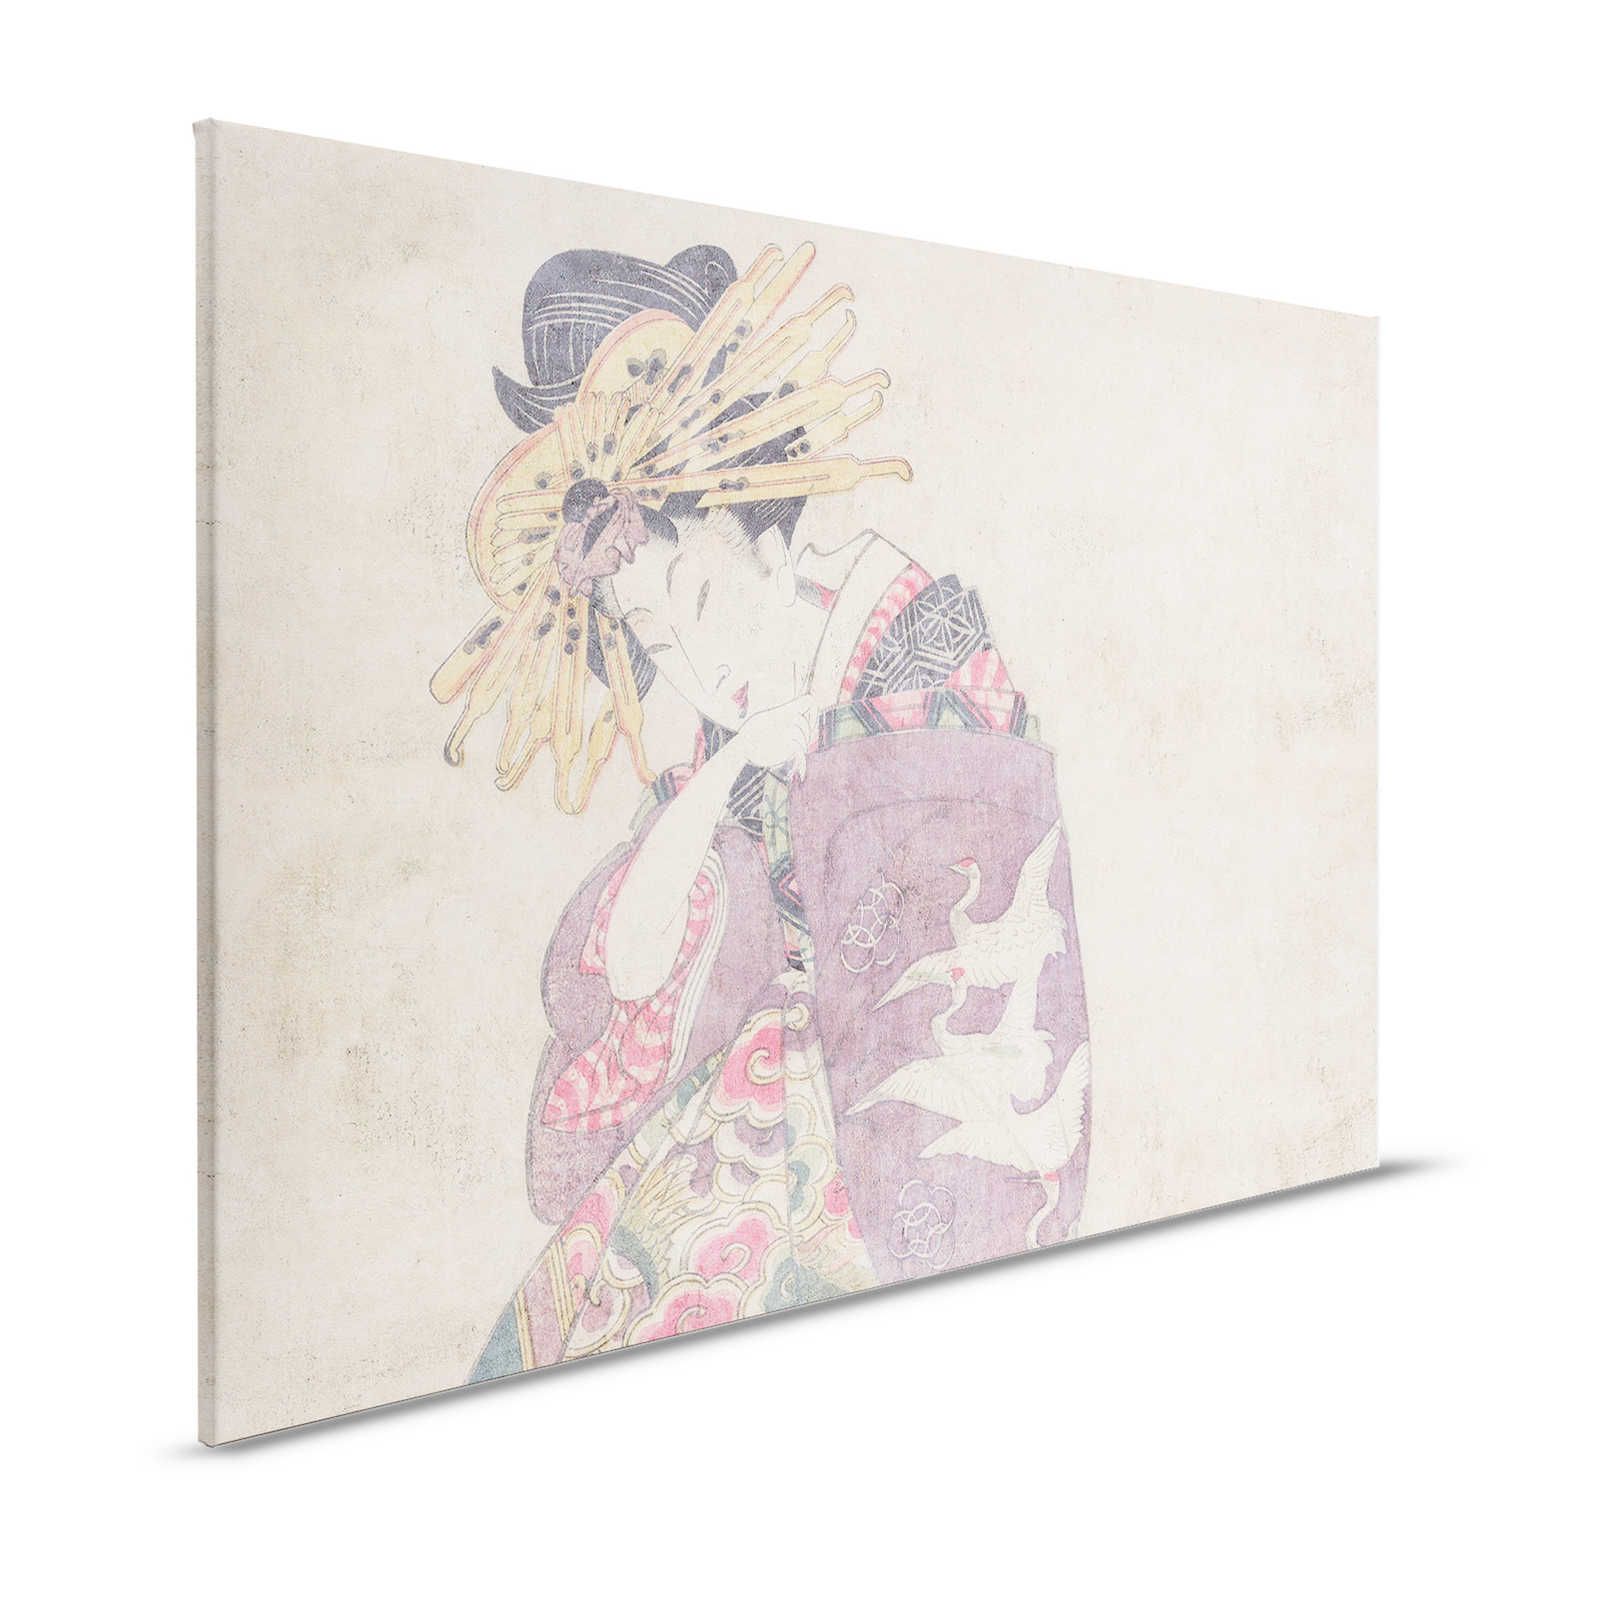 Osaka 1 - Impression d'art sur toile Décor asiatique style vintage - 1,20 m x 0,80 m
